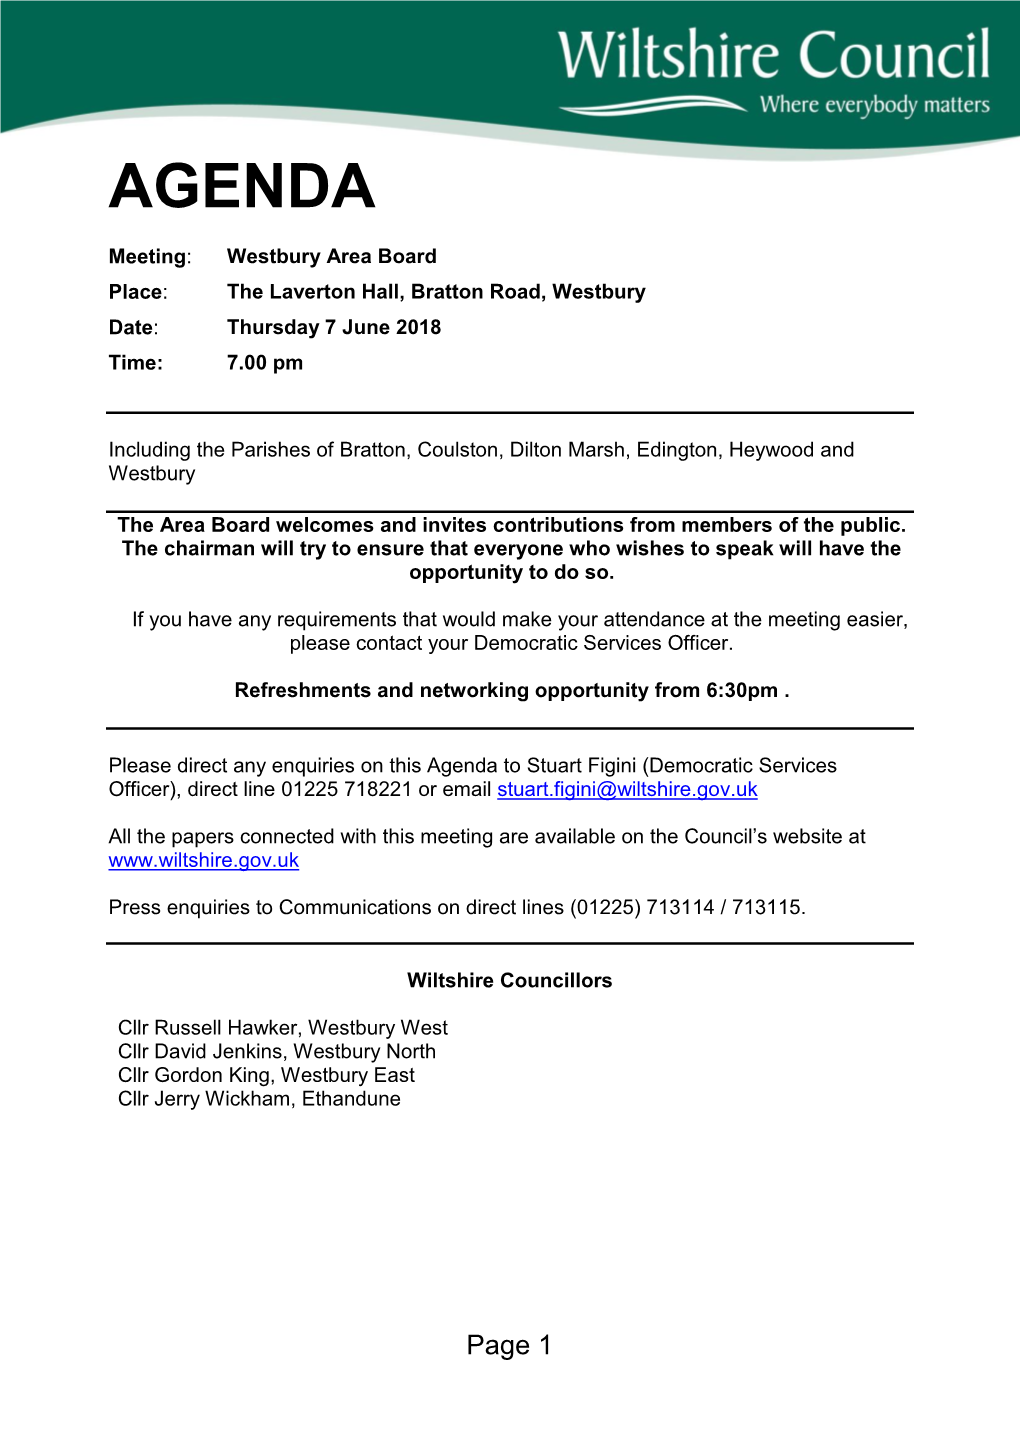 (Public Pack)Agenda Document for Westbury Area